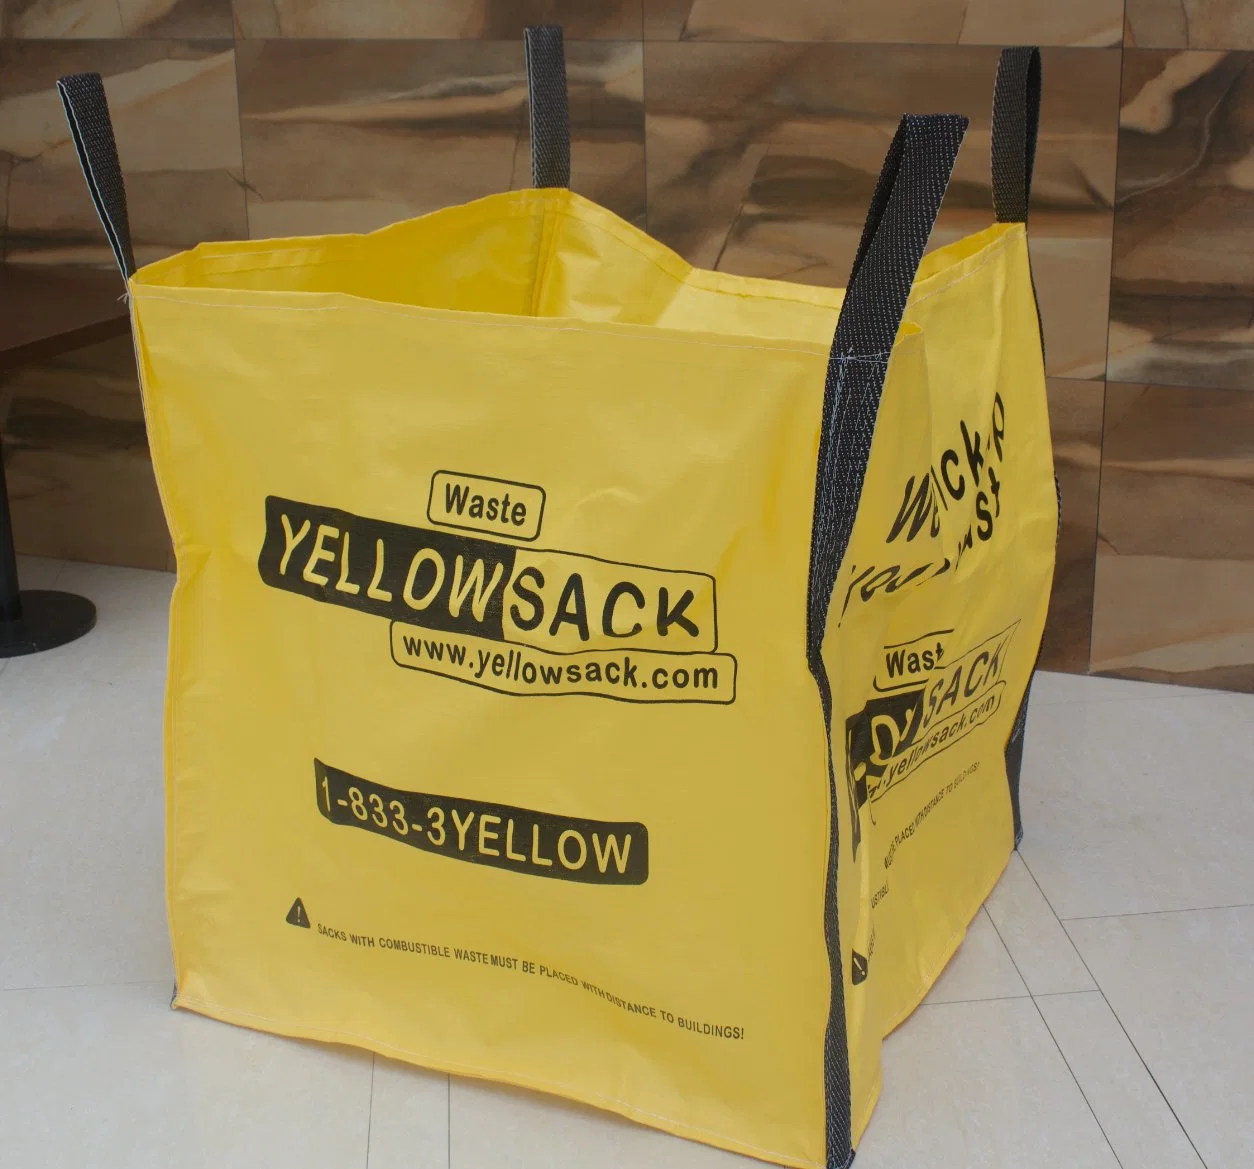 Сад мешок для сбора листьев Bag - это лучшее решение для поддержания чистоты окружающей среды в мусорных корзинах вакуумную упаковку подушек безопасности